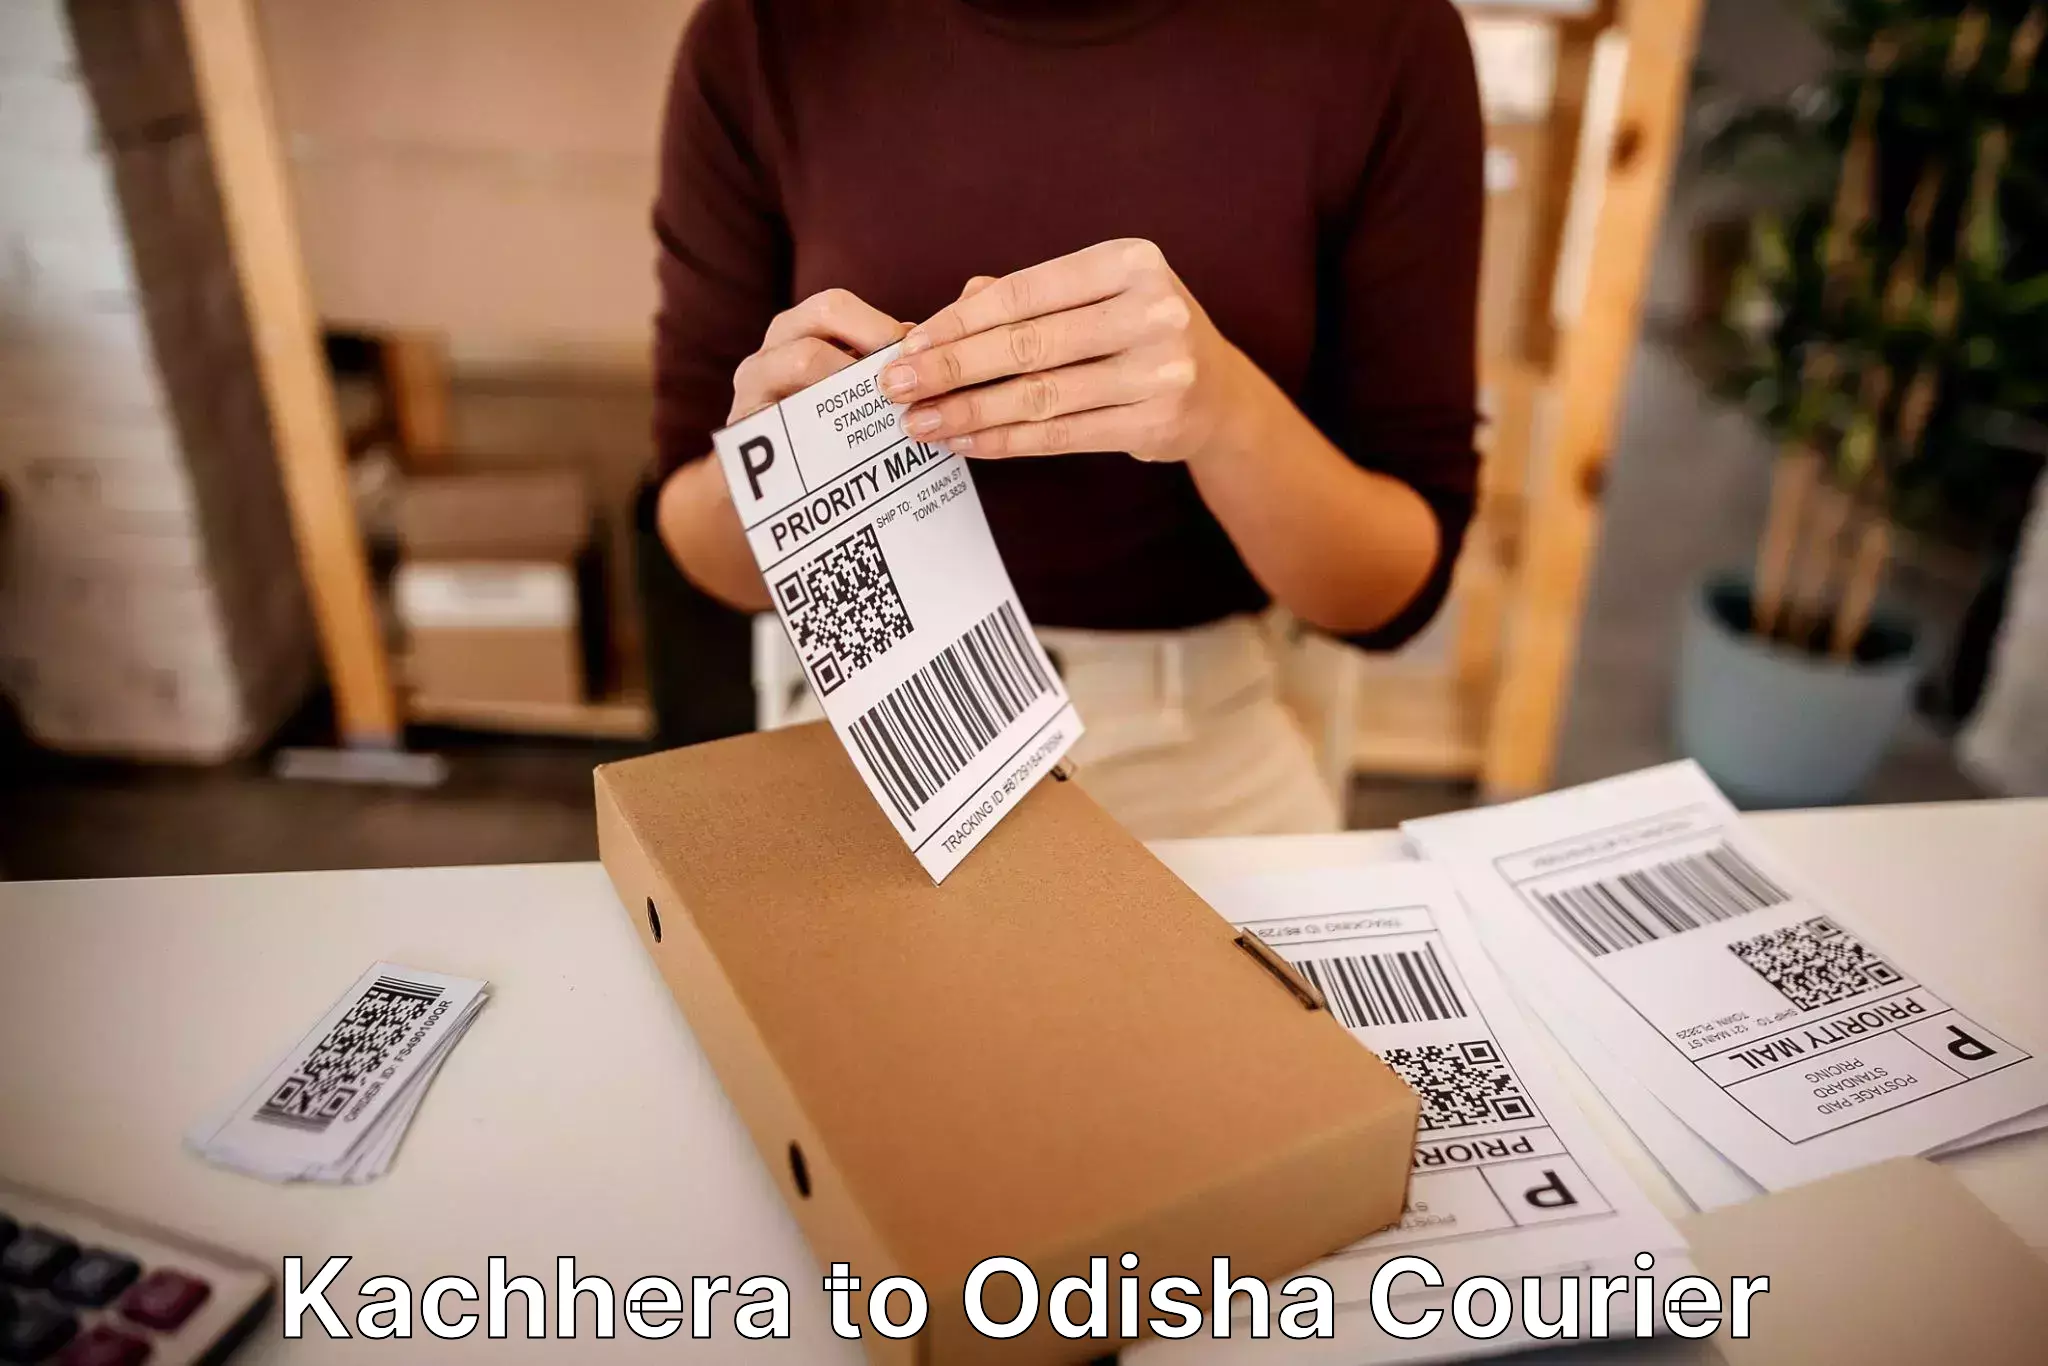 Professional packing services Kachhera to Odisha